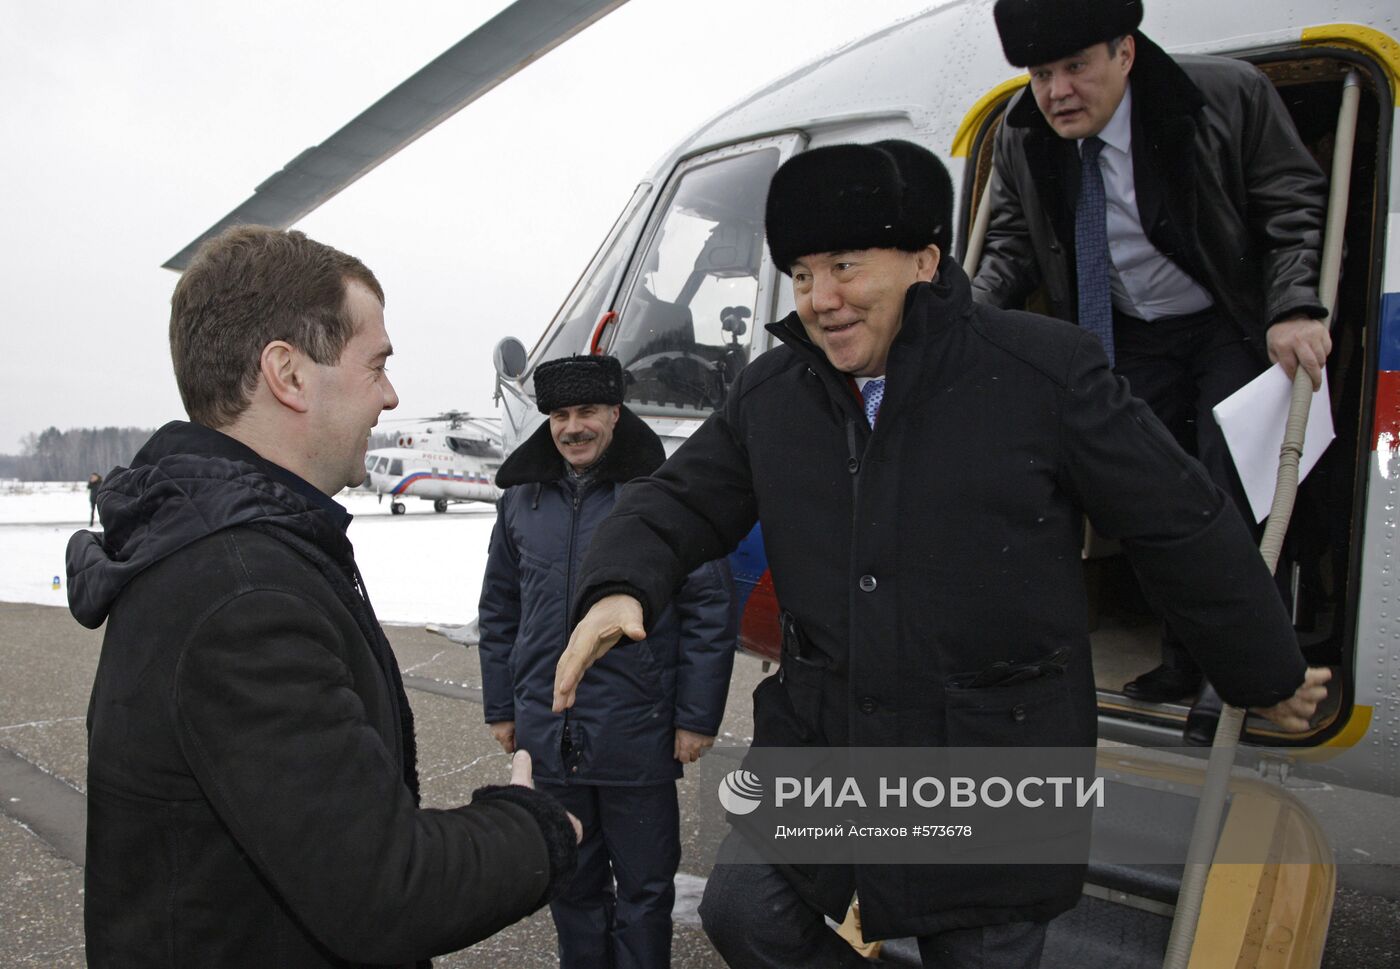 Встреча Дмитрия Медведева с Нурсултаном Назарбаевым